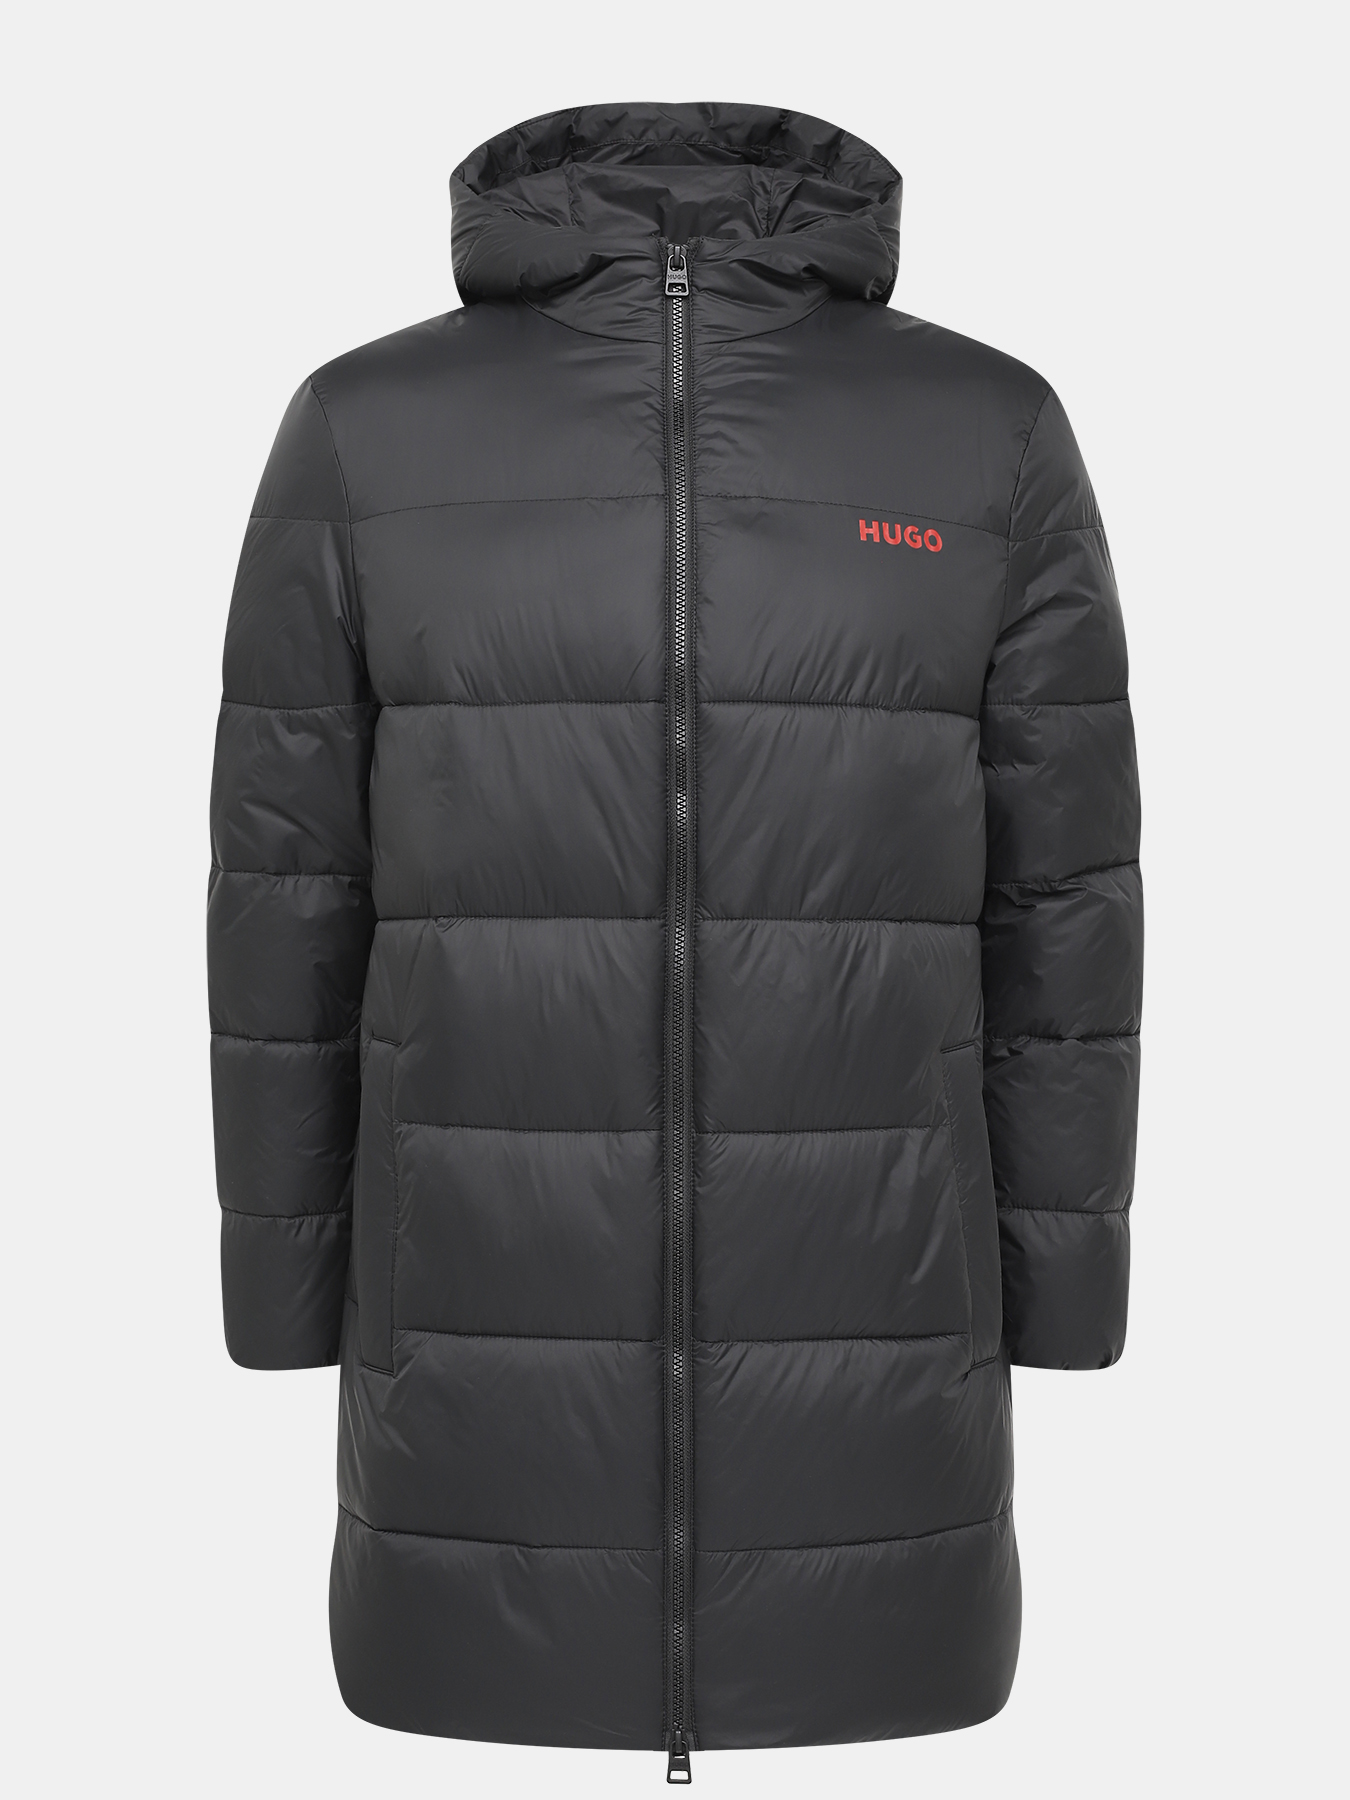 Удлиненная куртка Mati HUGO 426043-045, цвет черный, размер 52-54 - фото 1